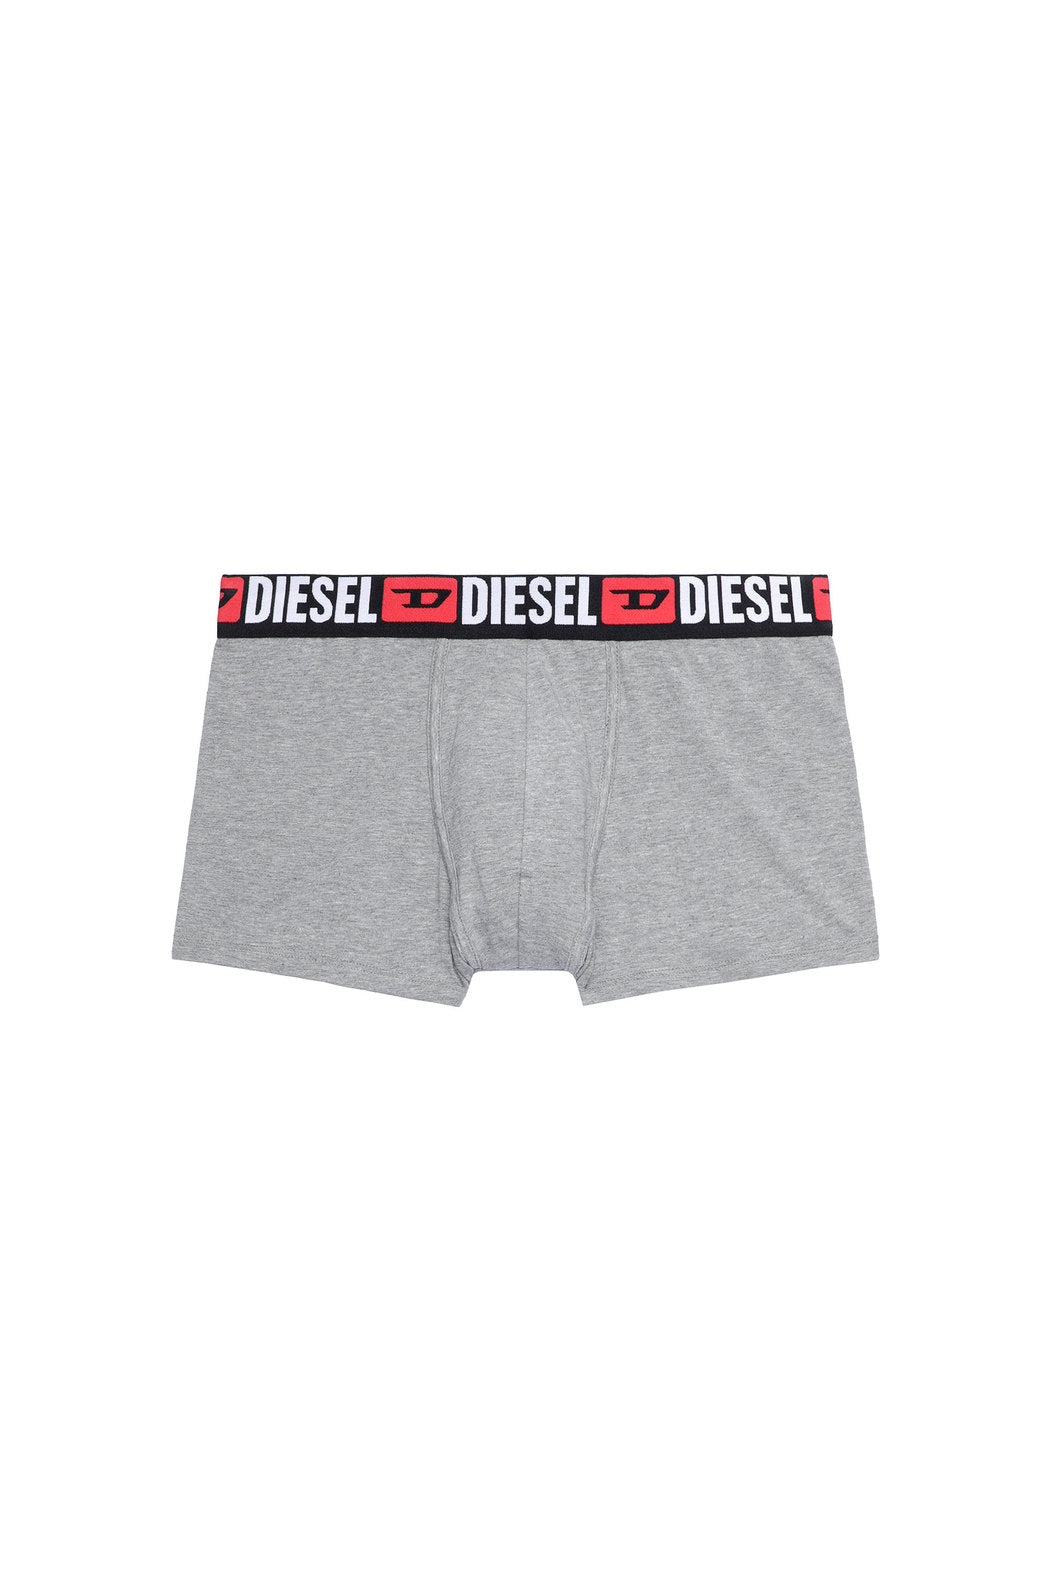 Diesel Damien Three Pack Underwear | Classics